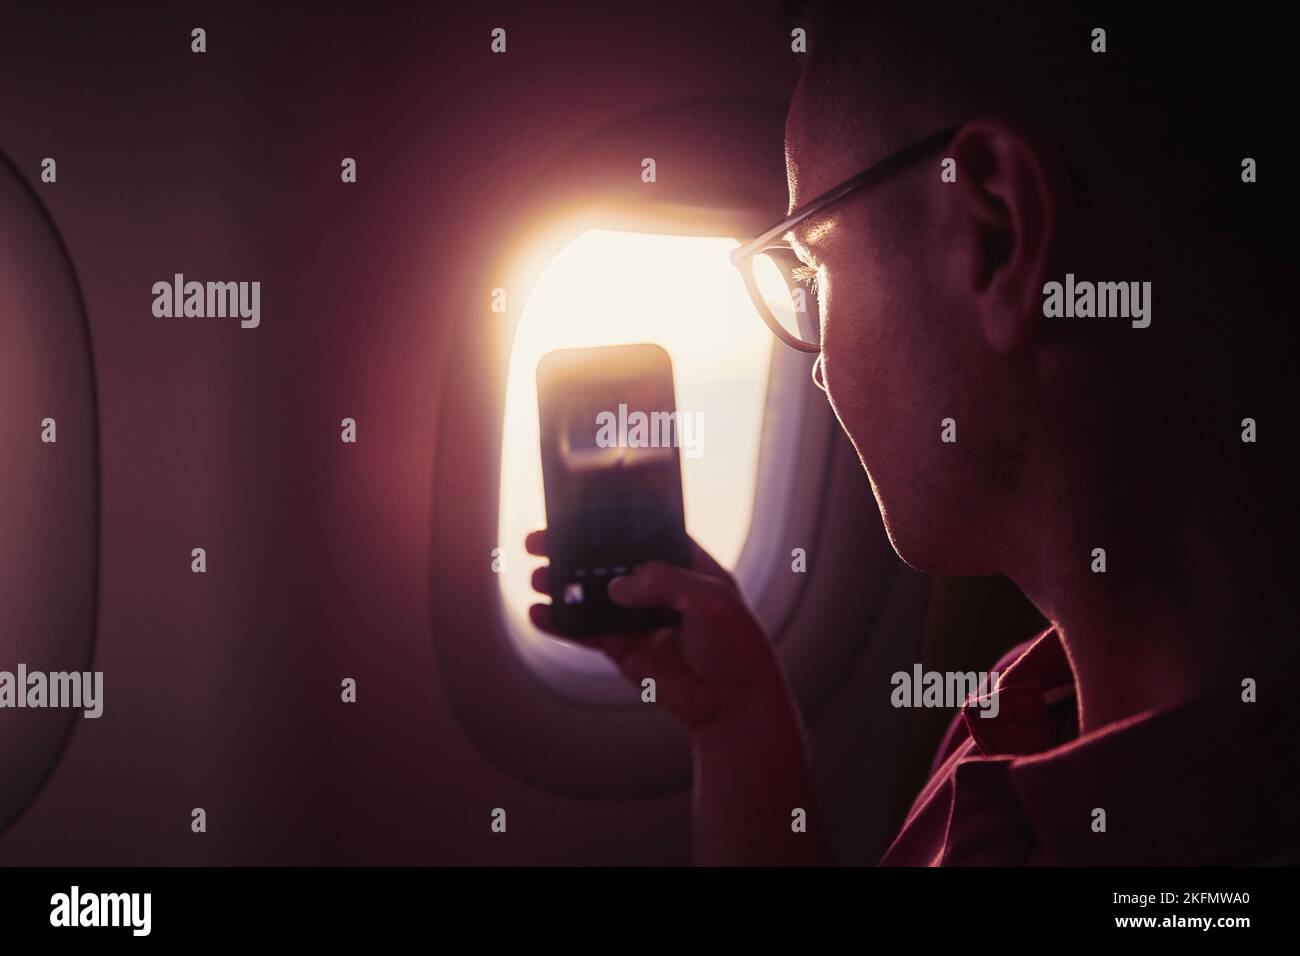 Porträt eines Mannes beim Fotografieren durch das Flugzeugfenster. Passagier telefoniert während des Fluges bei schönem Sonnenuntergang. Stockfoto